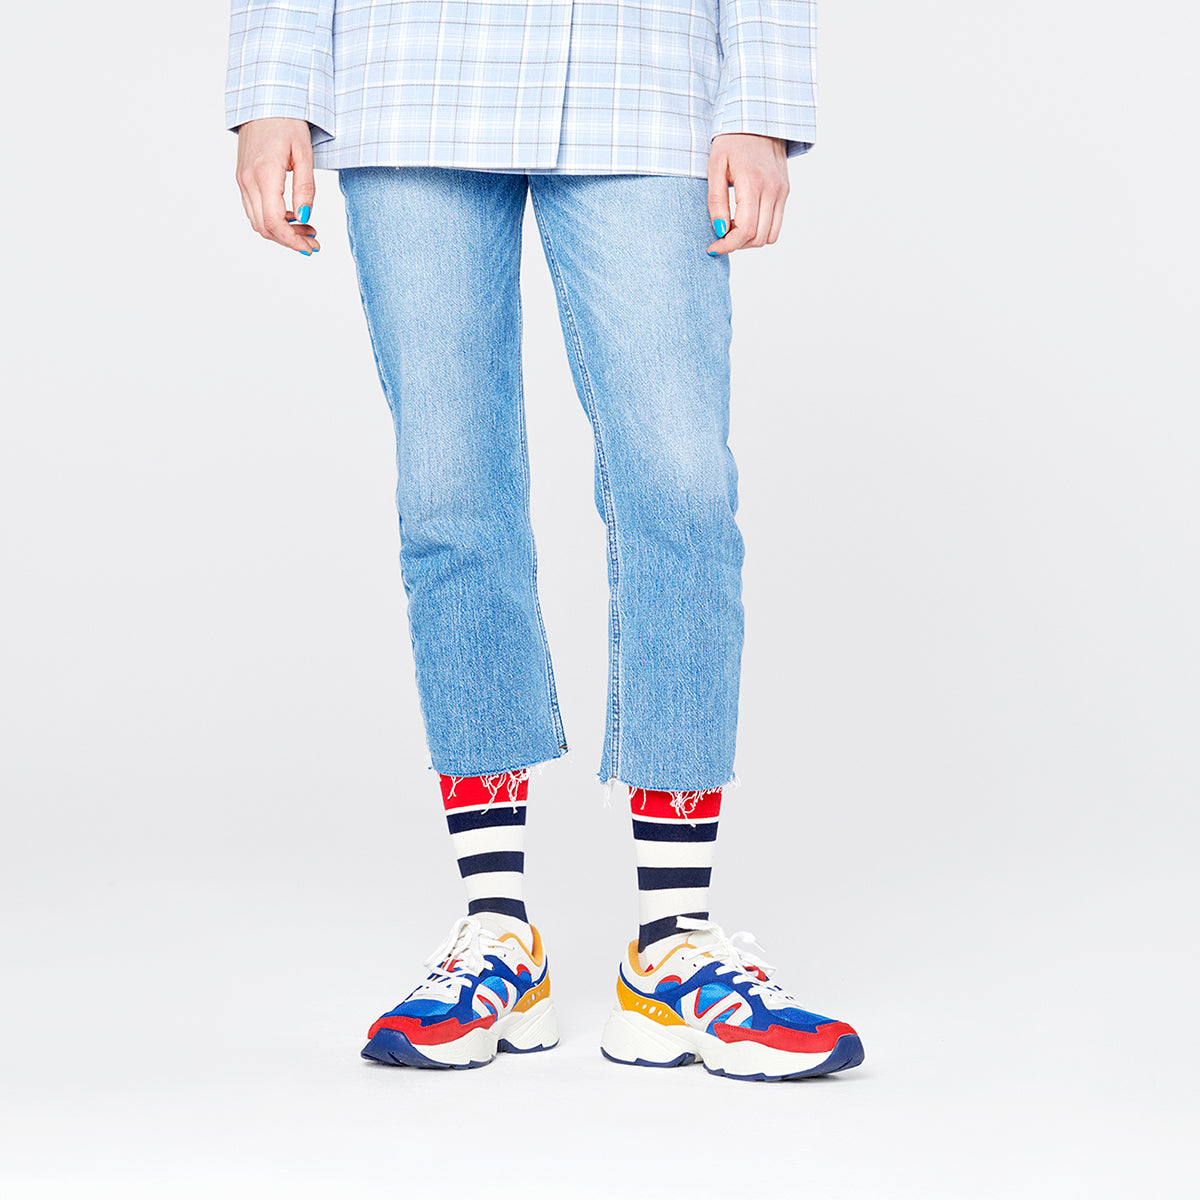 Stripe Sock (045)